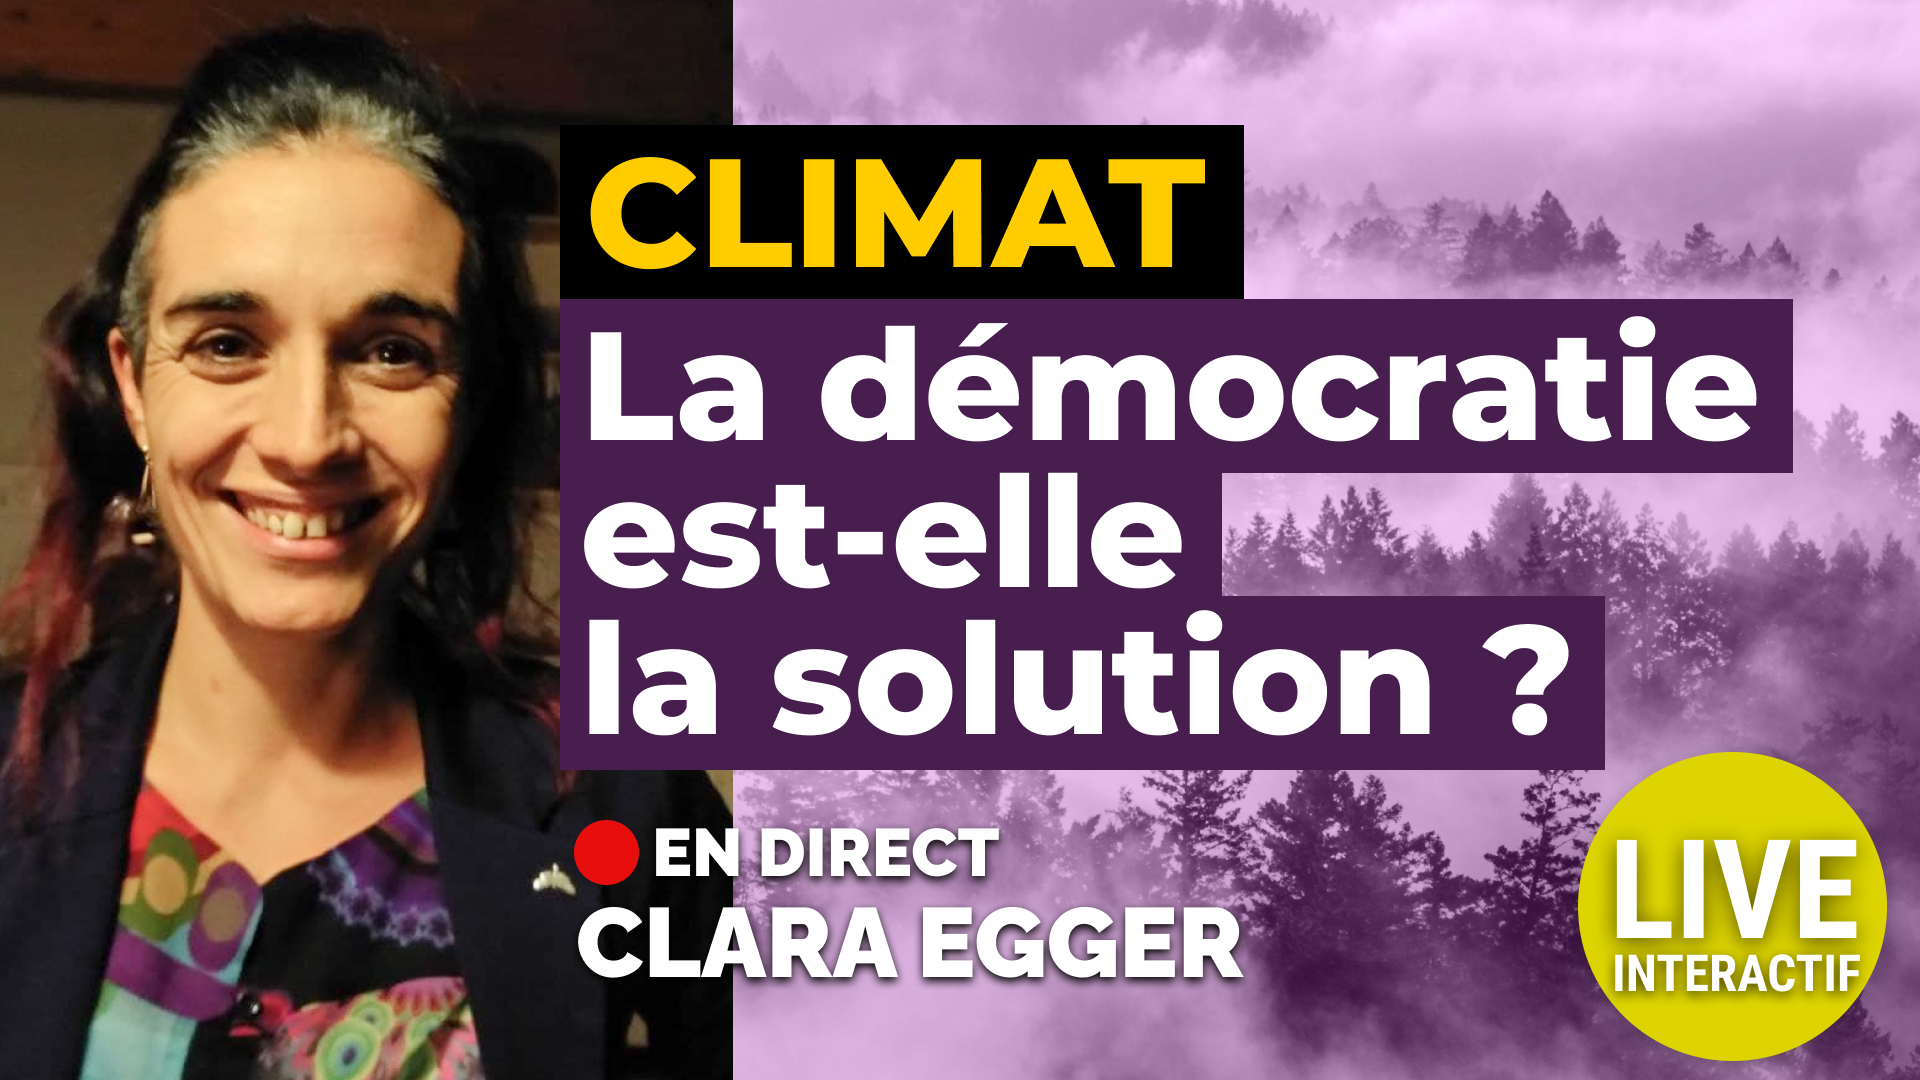 #CLIMAT : la #DÉMOCRATIE est-elle la solution ? Live CLARA EGGER